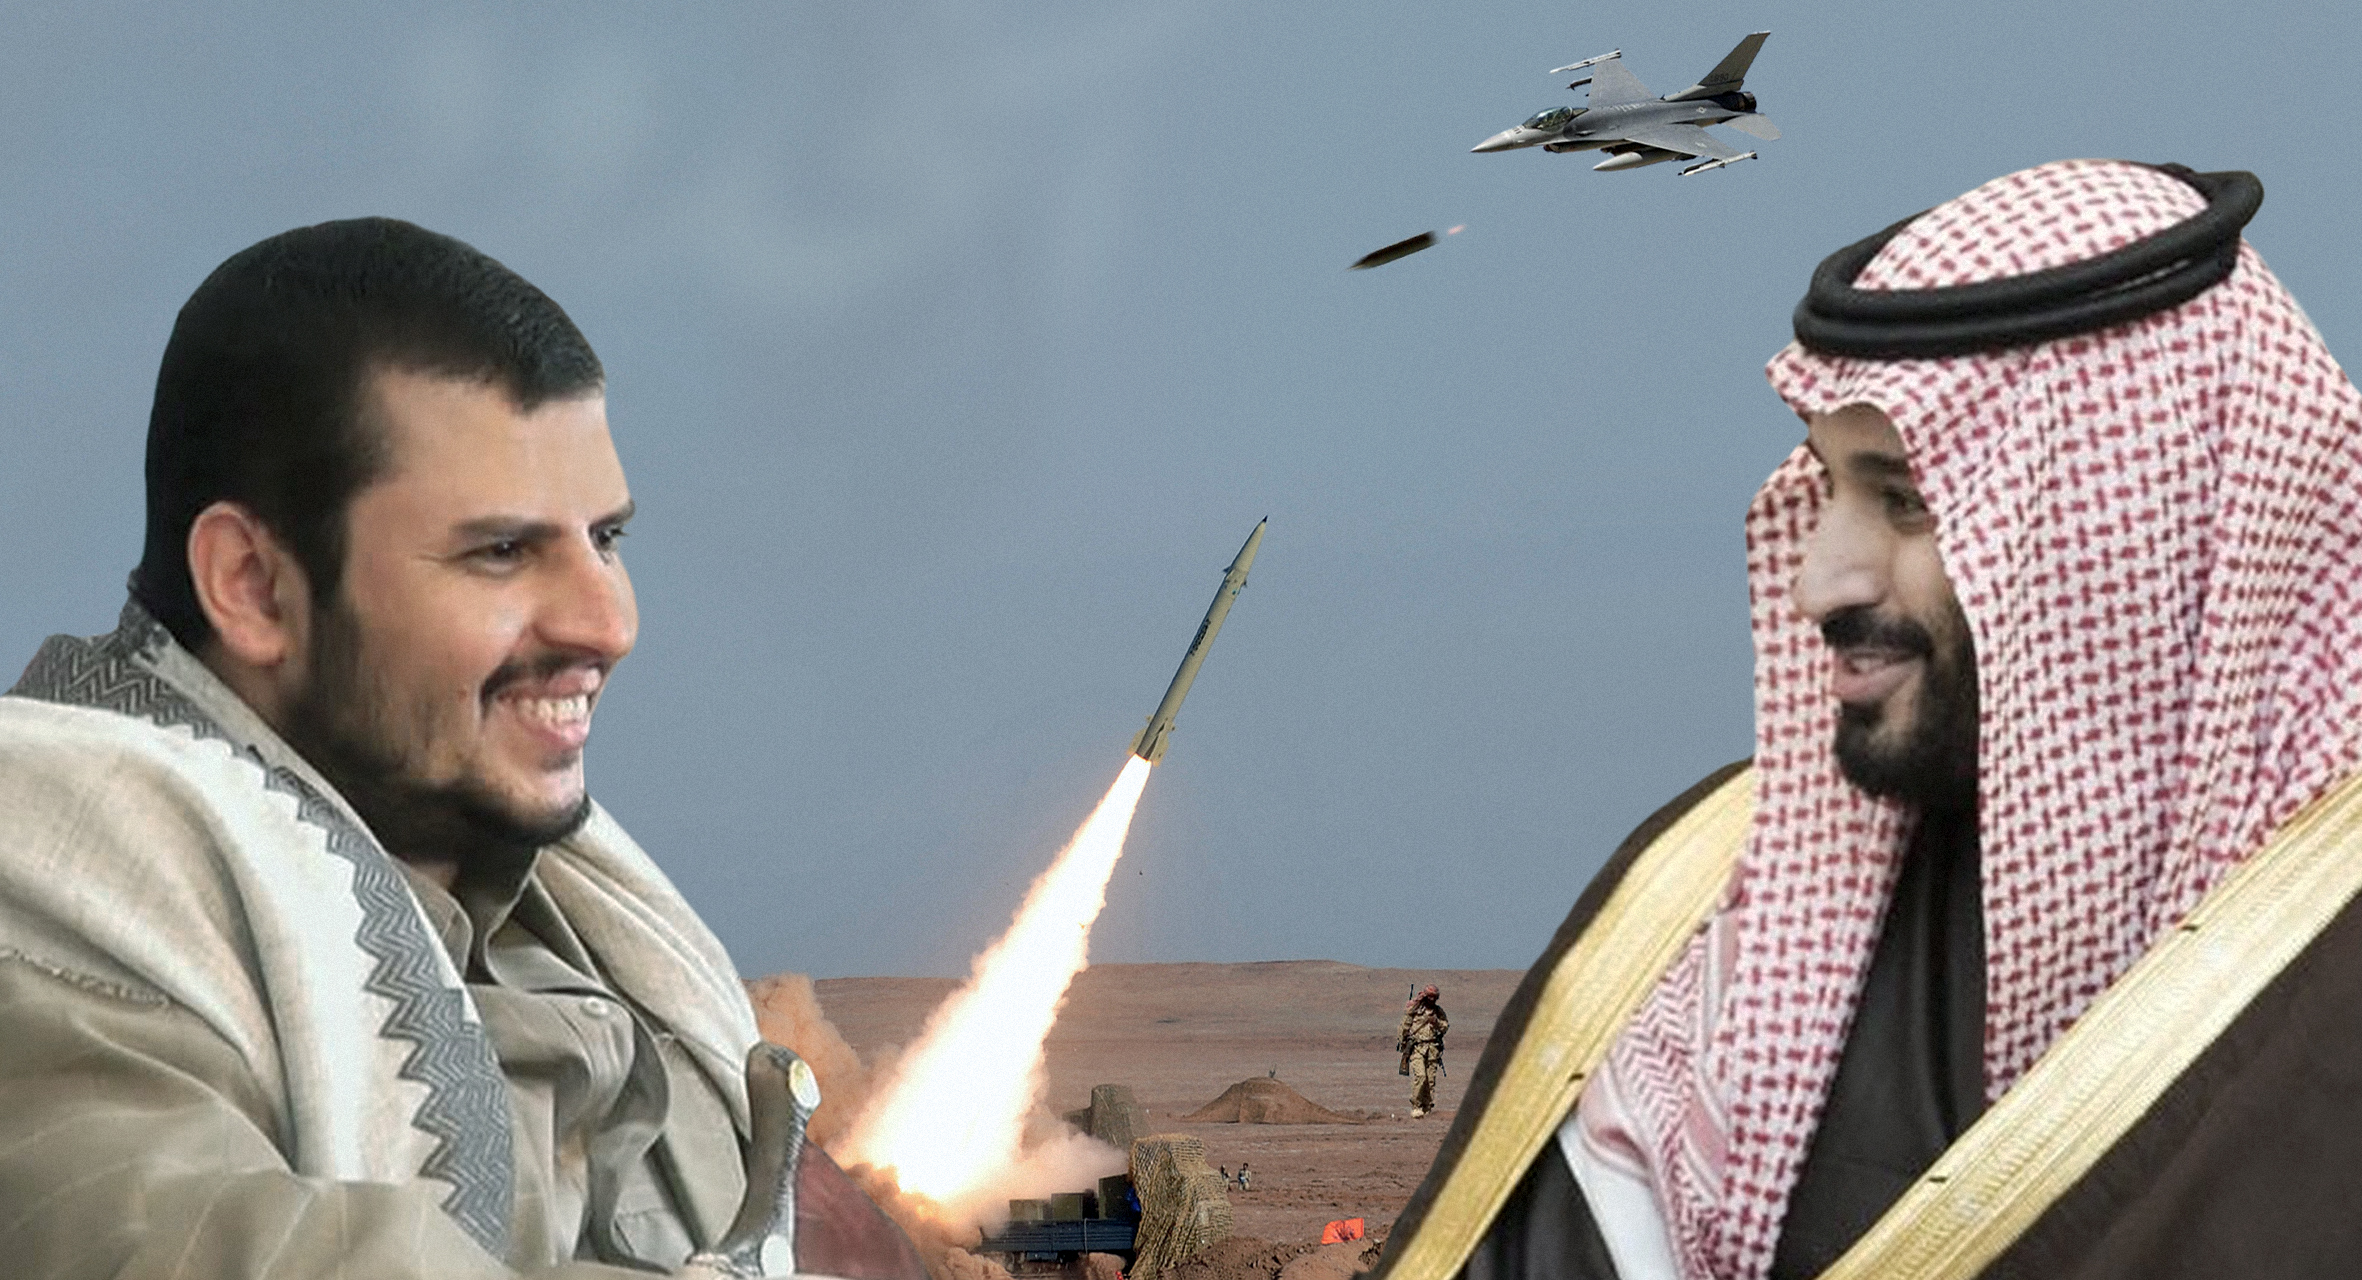 صورة اتفاق سعودي-حوثي على القتال بالتزامن مع المفاوضات تحسّباً لأيهما ينهي الصراع أولا